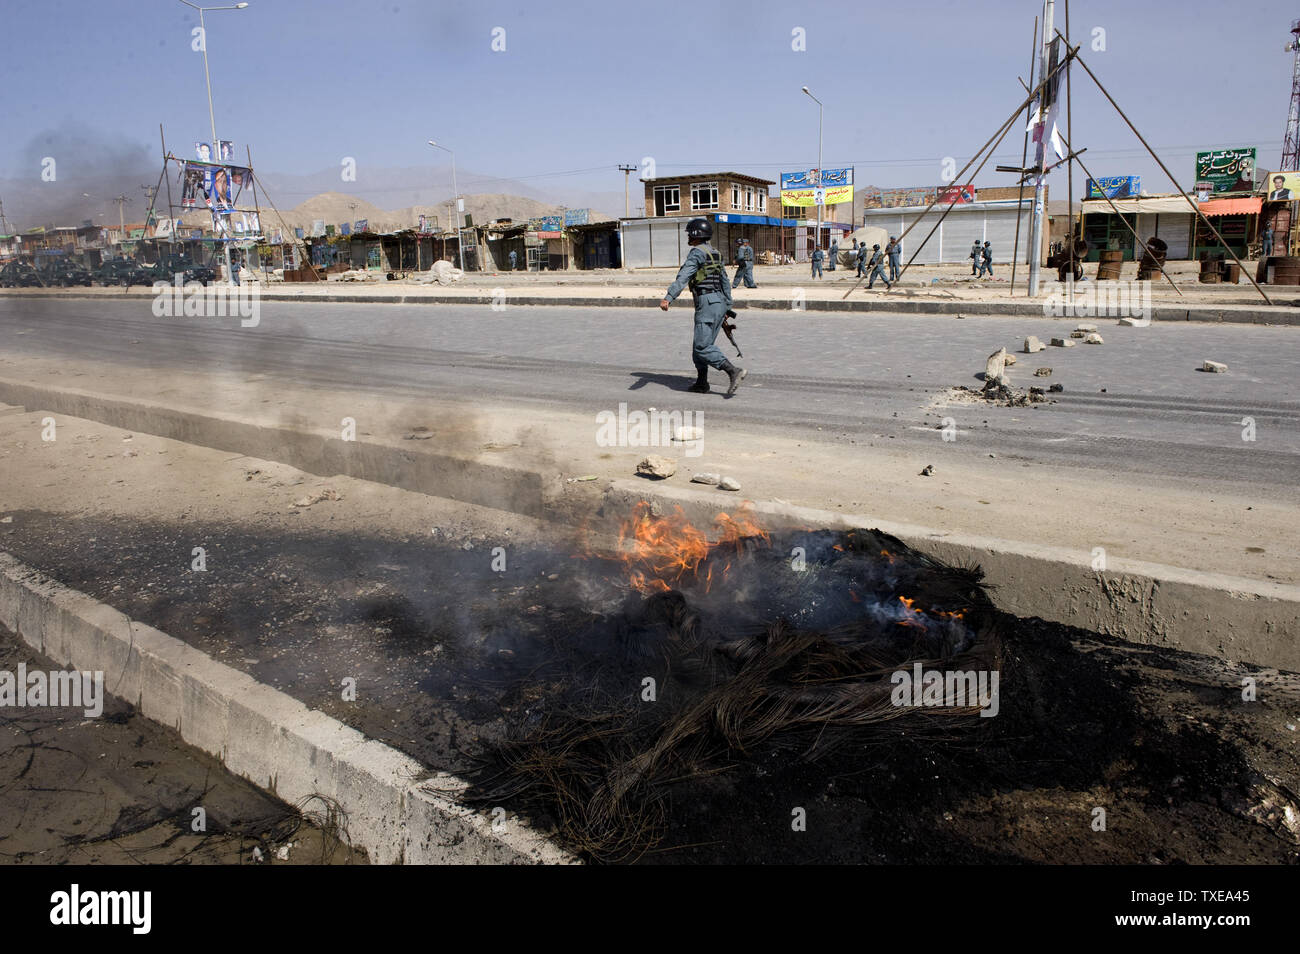 Polizia afgana pattugliare le strade durante disordini a Kabul il 15 settembre 2010. Centinaia di afgani versata su strade di Kabul per protestare contro i piani, cancellate giorni fa da un pastore di noi per masterizzare copie del Corano, funzionari e testimoni ha detto. I dimostranti hanno lanciato pietre contro poliziotti antisommossa dopo gli ufficiali hanno impedito loro di marciare verso il centro della città, un ministero degli interni portavoce ha detto. UPI Foto Stock